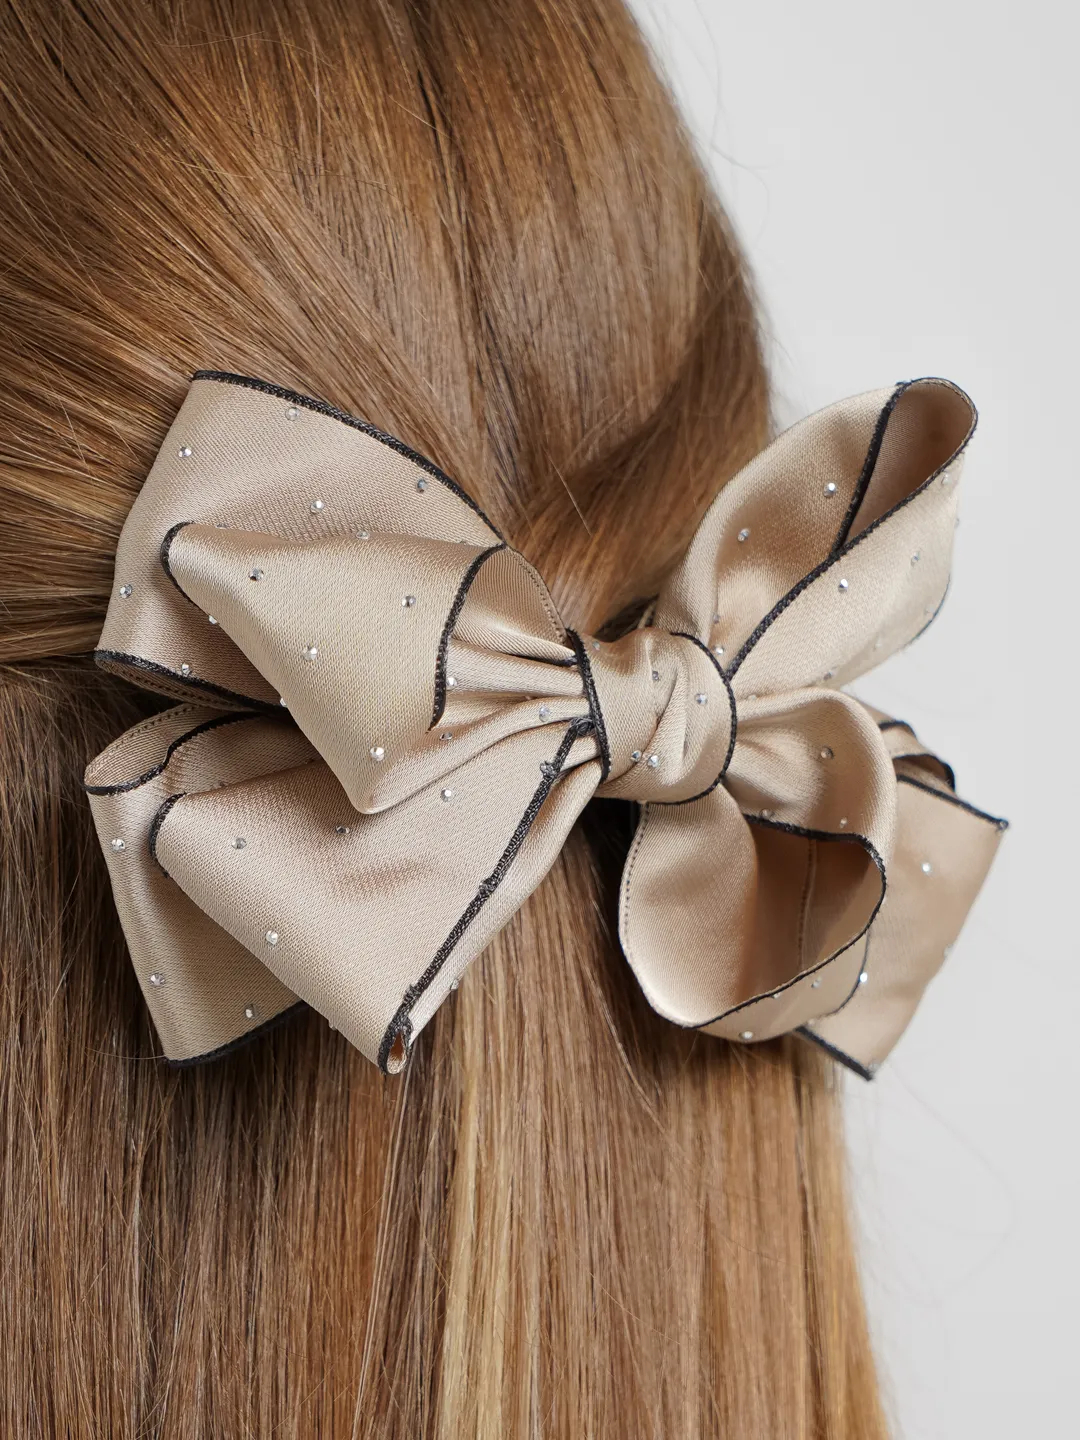 Прически на средние волосы в домашних условиях: фото идей и пошаговые инструкции - natali-fashion.ru